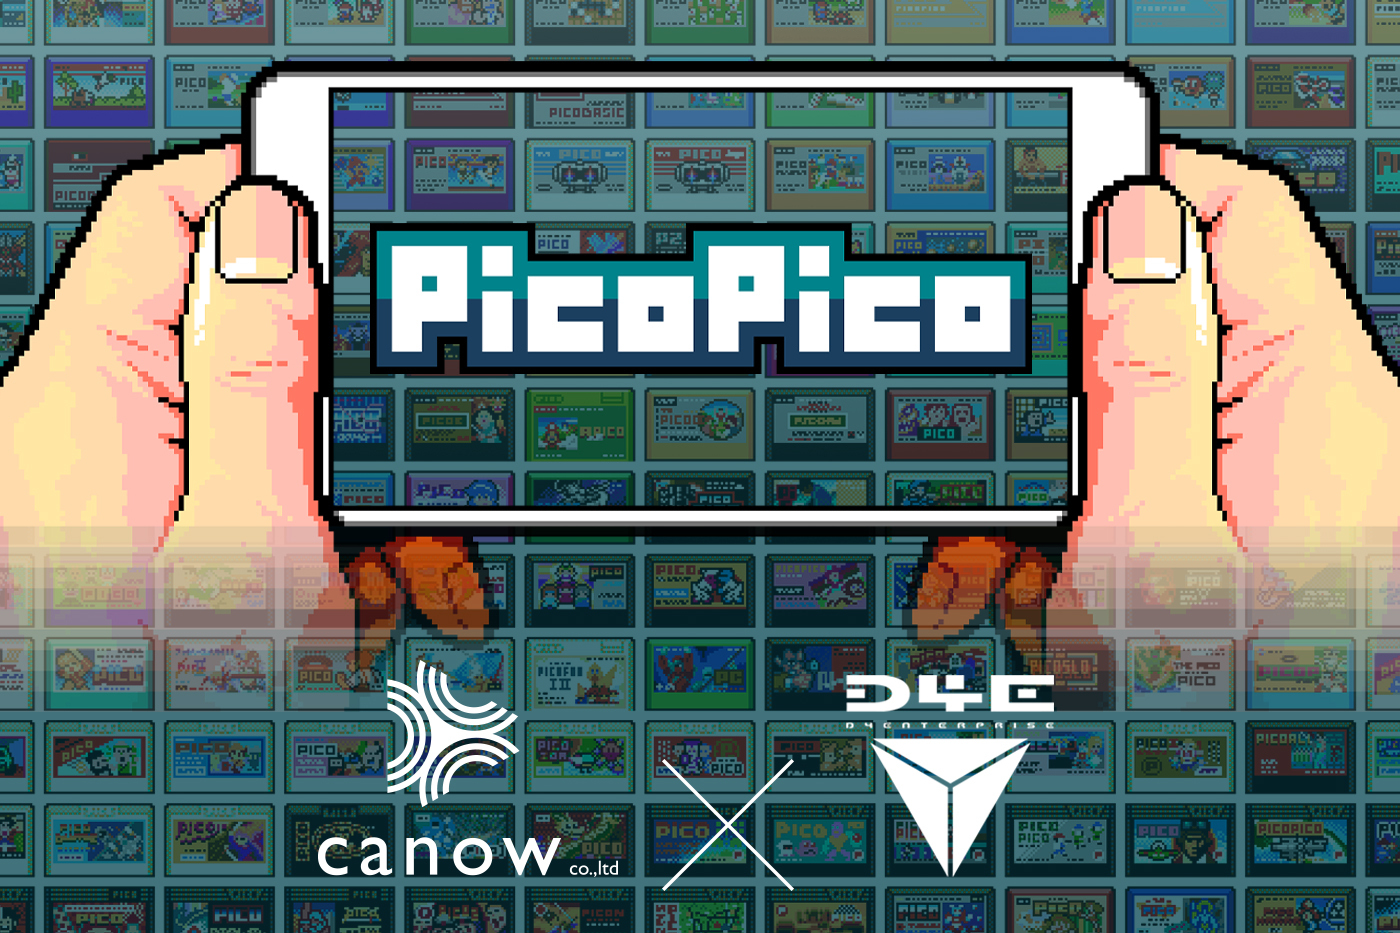 過去の名作をスマホで エモいアプリ Picopico にcanowが出資 初の資本業務提携 Canow株式会社のプレスリリース